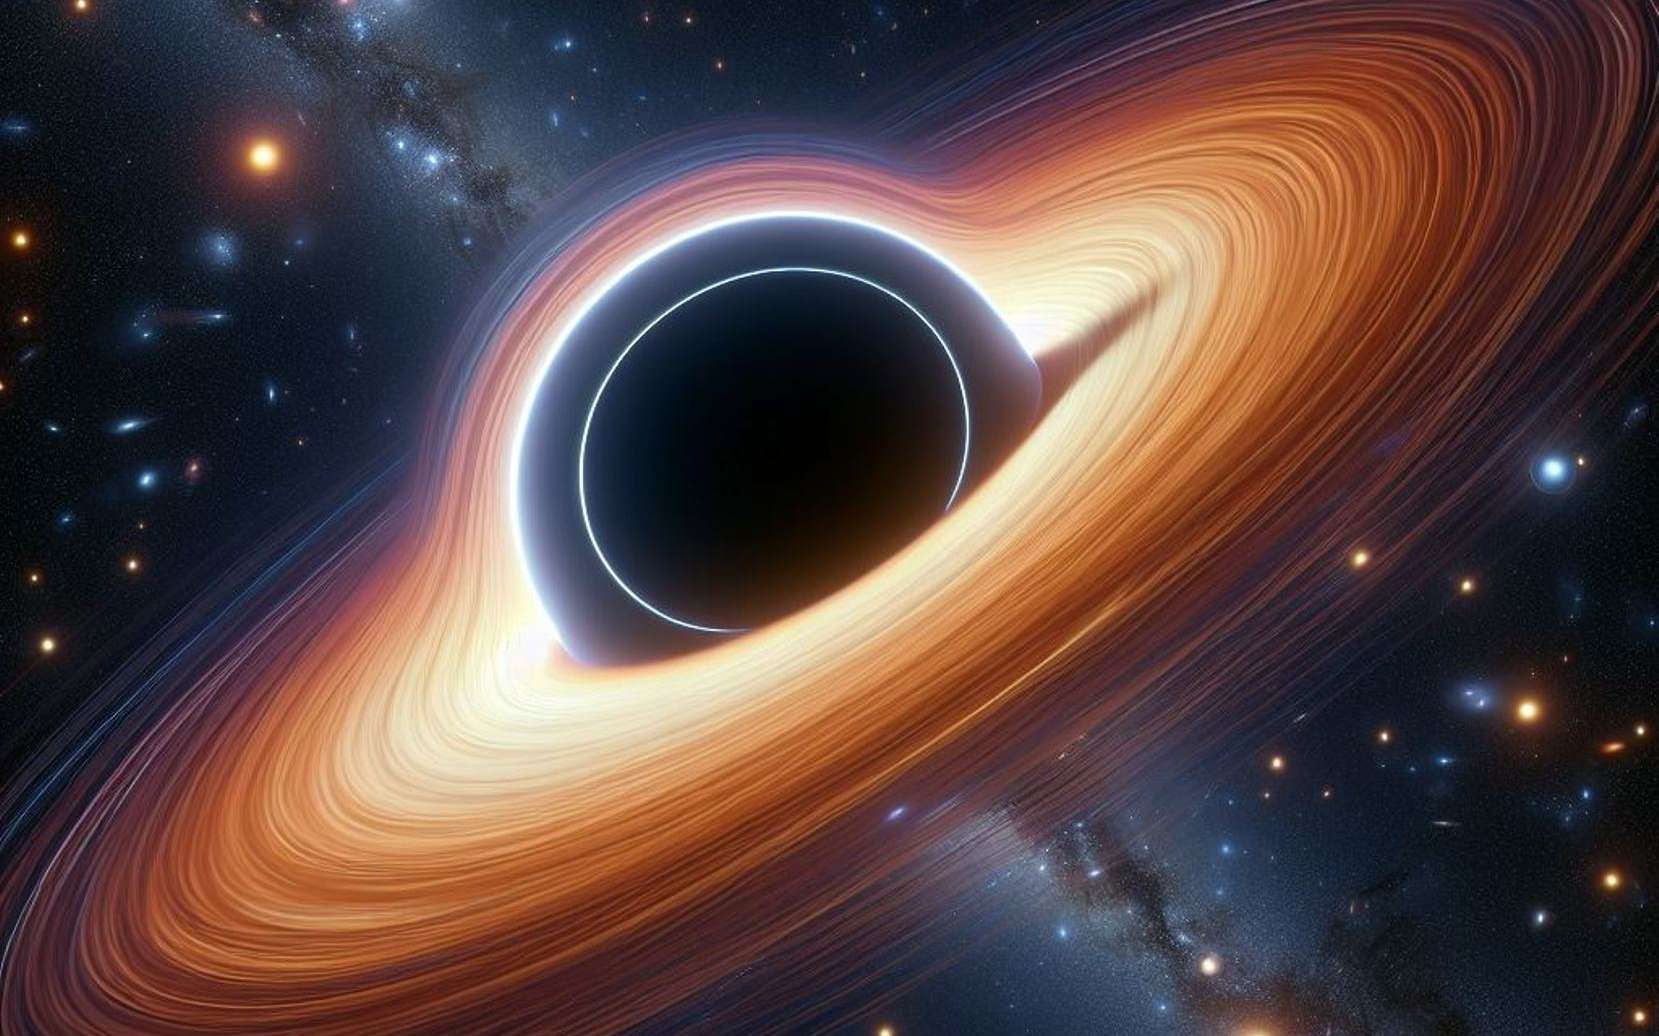 La matière est bien en mouvement autour du premier trou noir géant photographié nous dit une nouvelle image